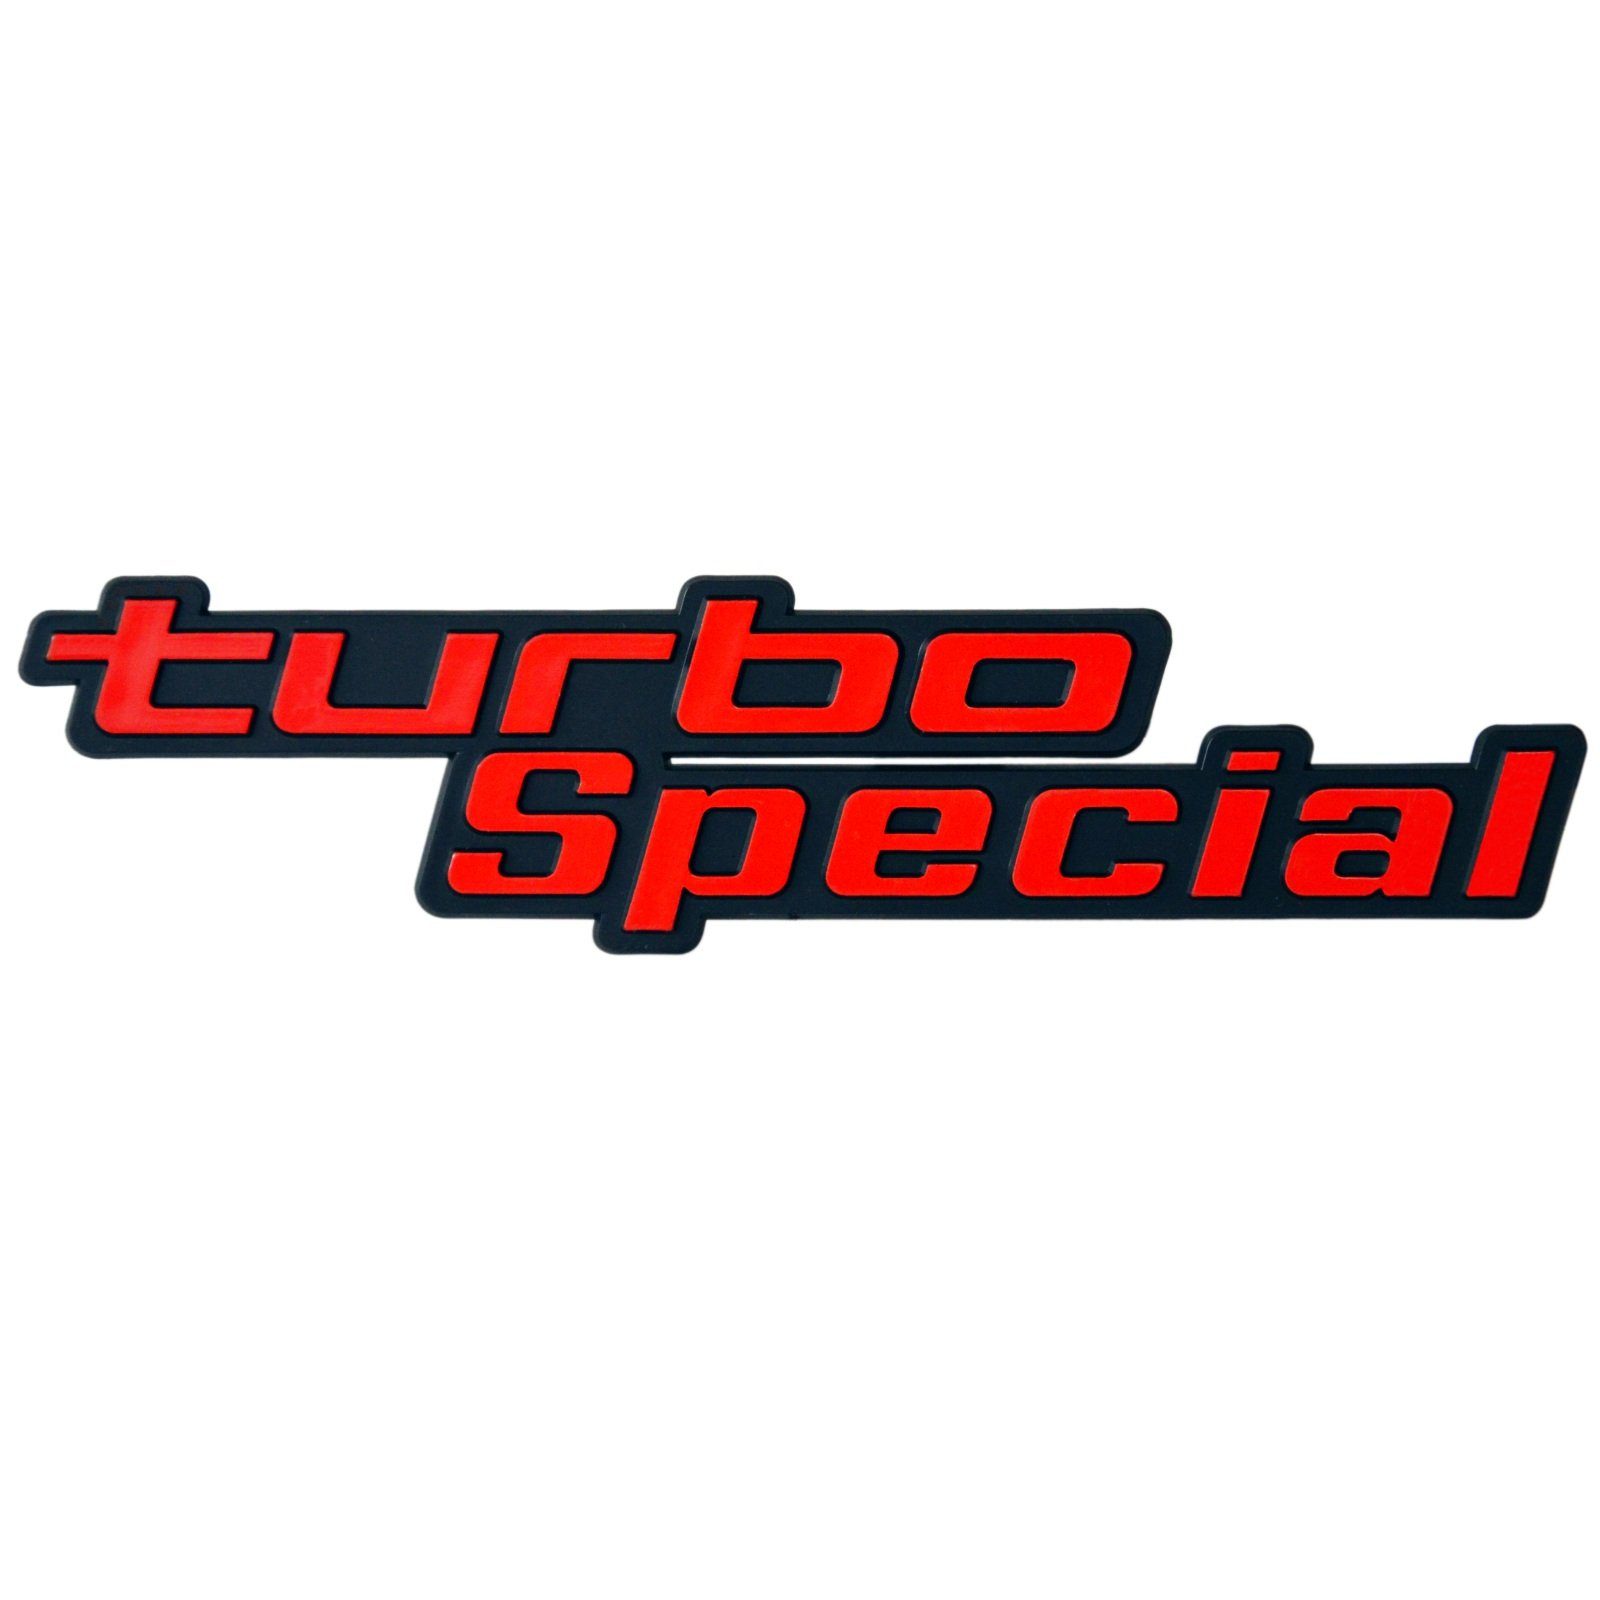 HR Autocomfort Typenschild Auto 3D Relief - turbo Special - Schild 18 cm rot Emblem selbstklebend